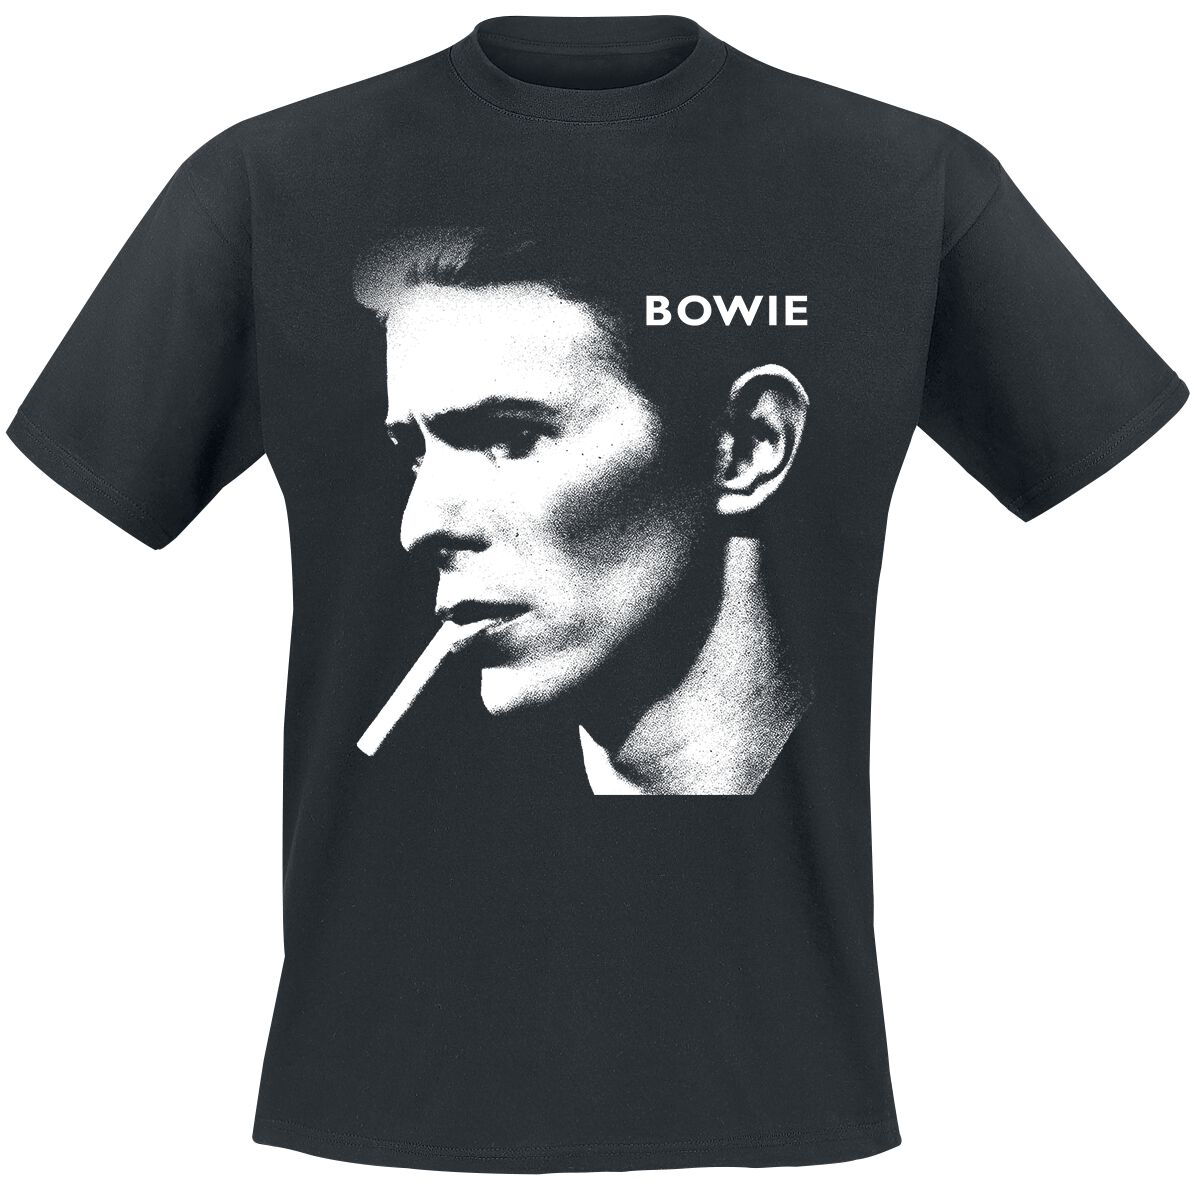 David Bowie T-Shirt - Grainy Smoke - S bis XXL - für Männer - Größe M - schwarz  - Lizenziertes Merchandise!